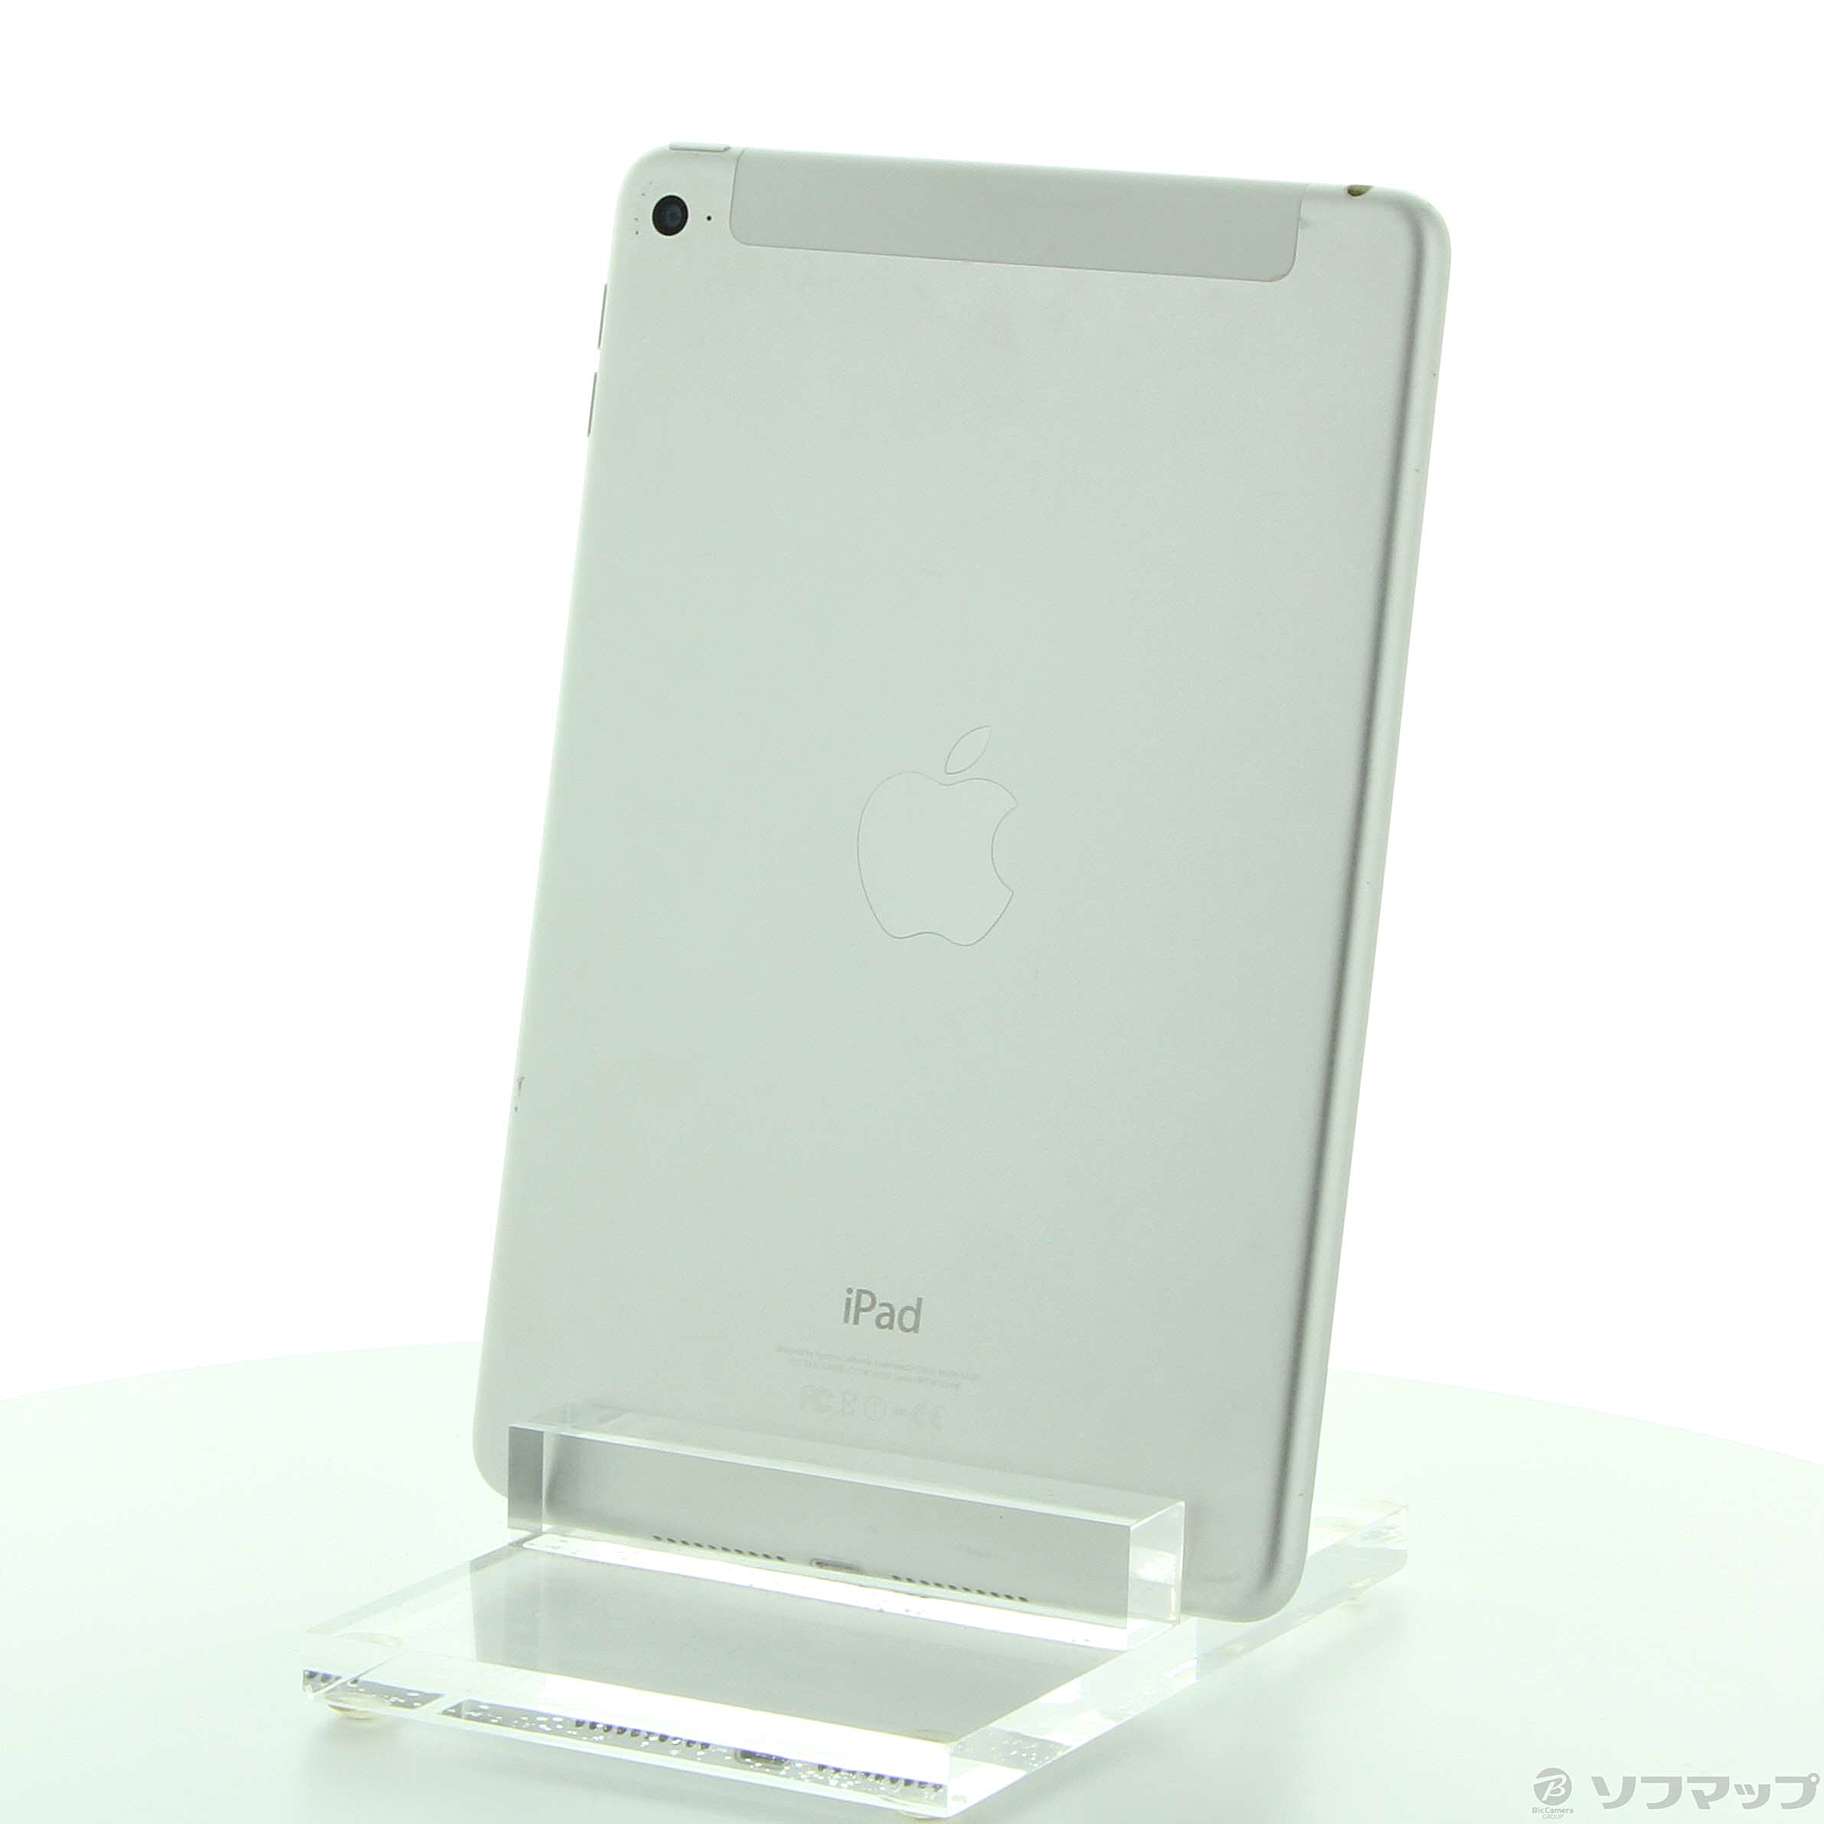 爆買い格安MK772J/A iPad mini 4 128GB iPad本体